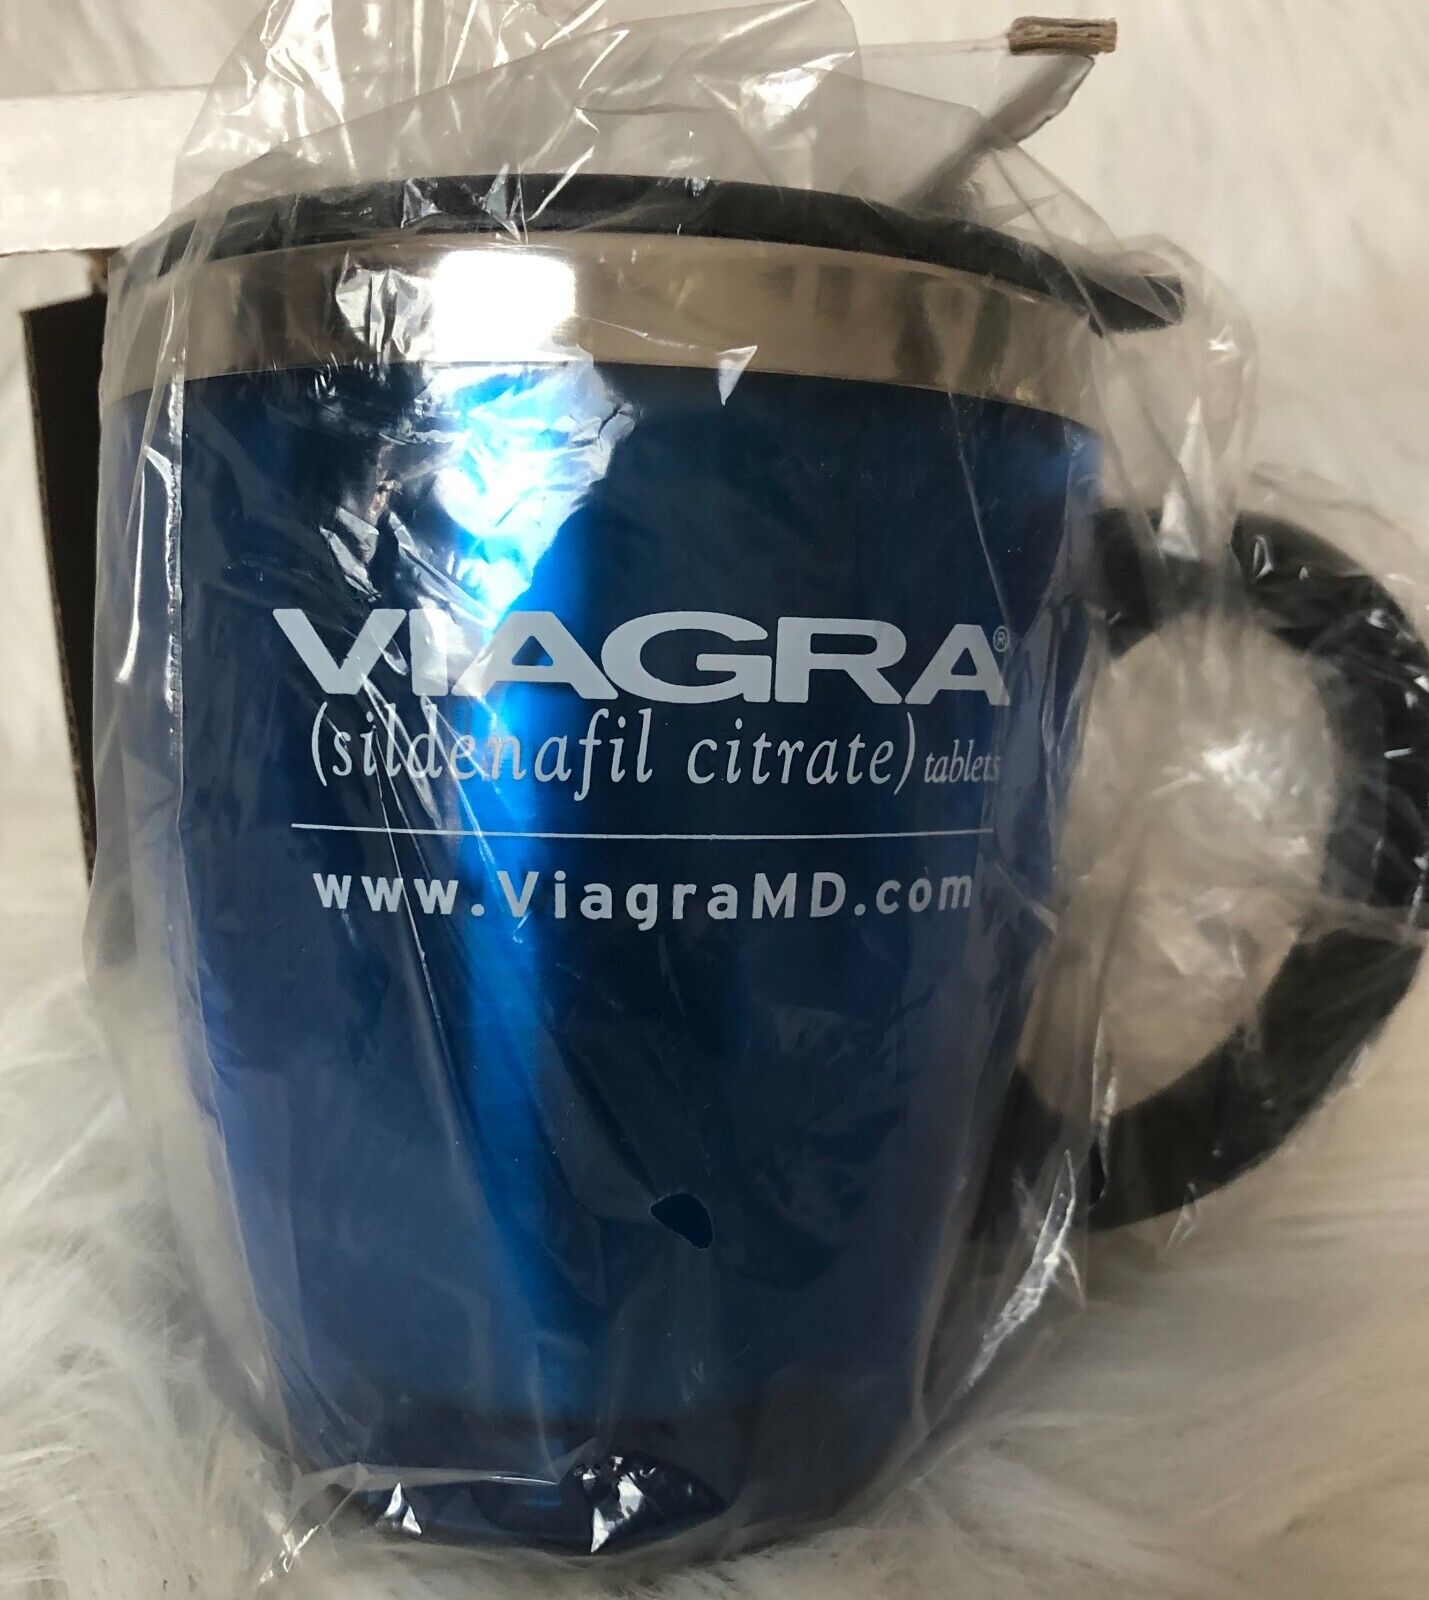 Pfizer Viagra desk mug